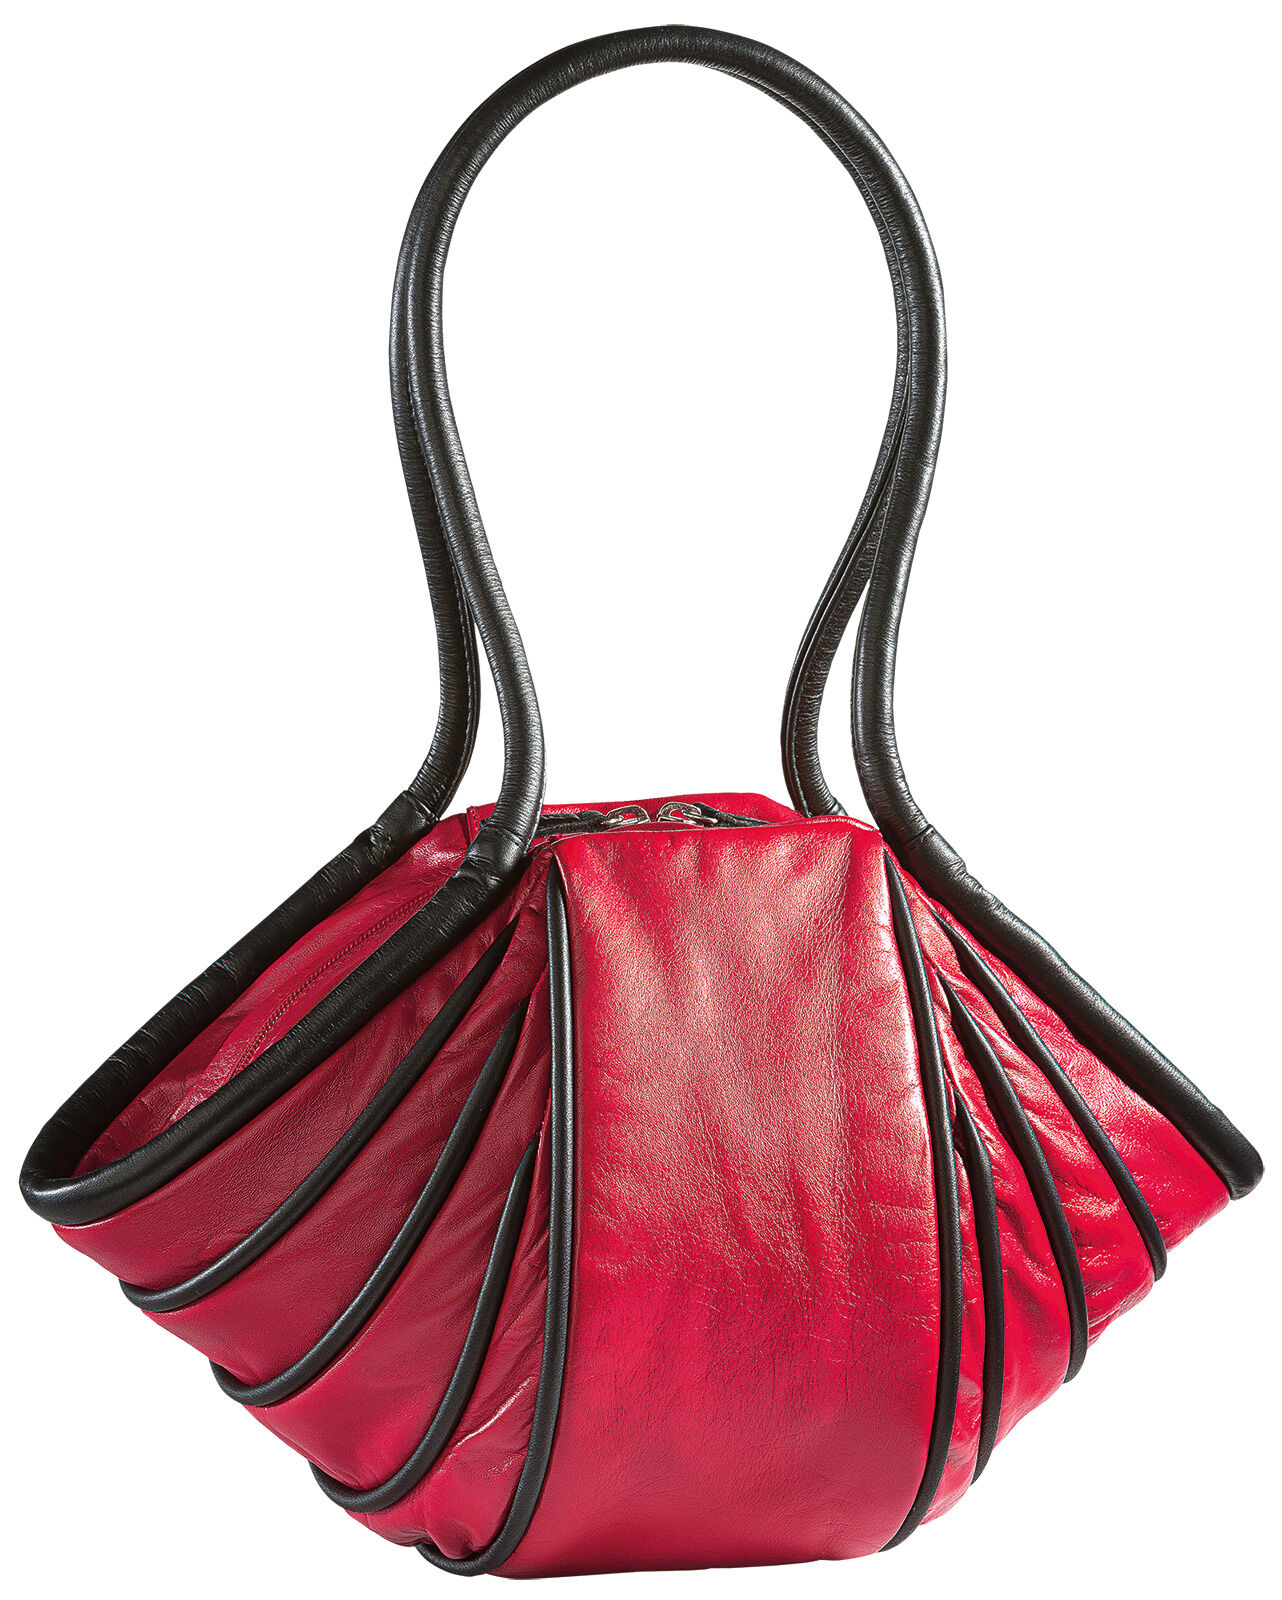 Håndtaske "Lady-Stripe", rød/sort version